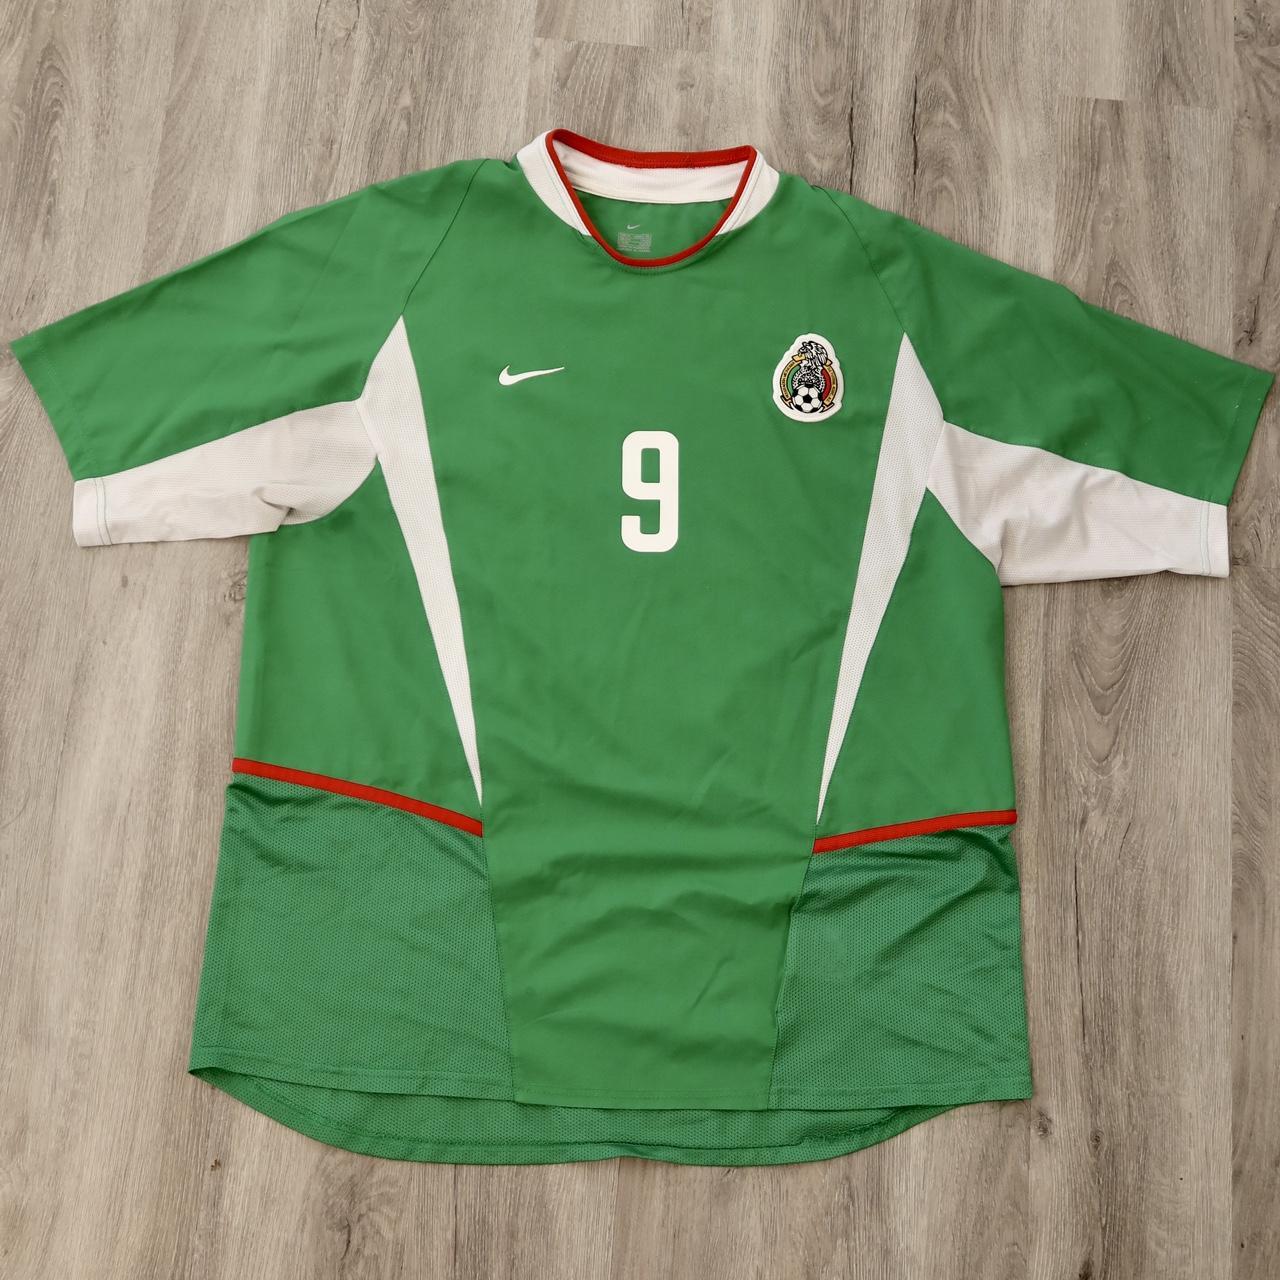 Jared Borgetti's classic Mexico shirt